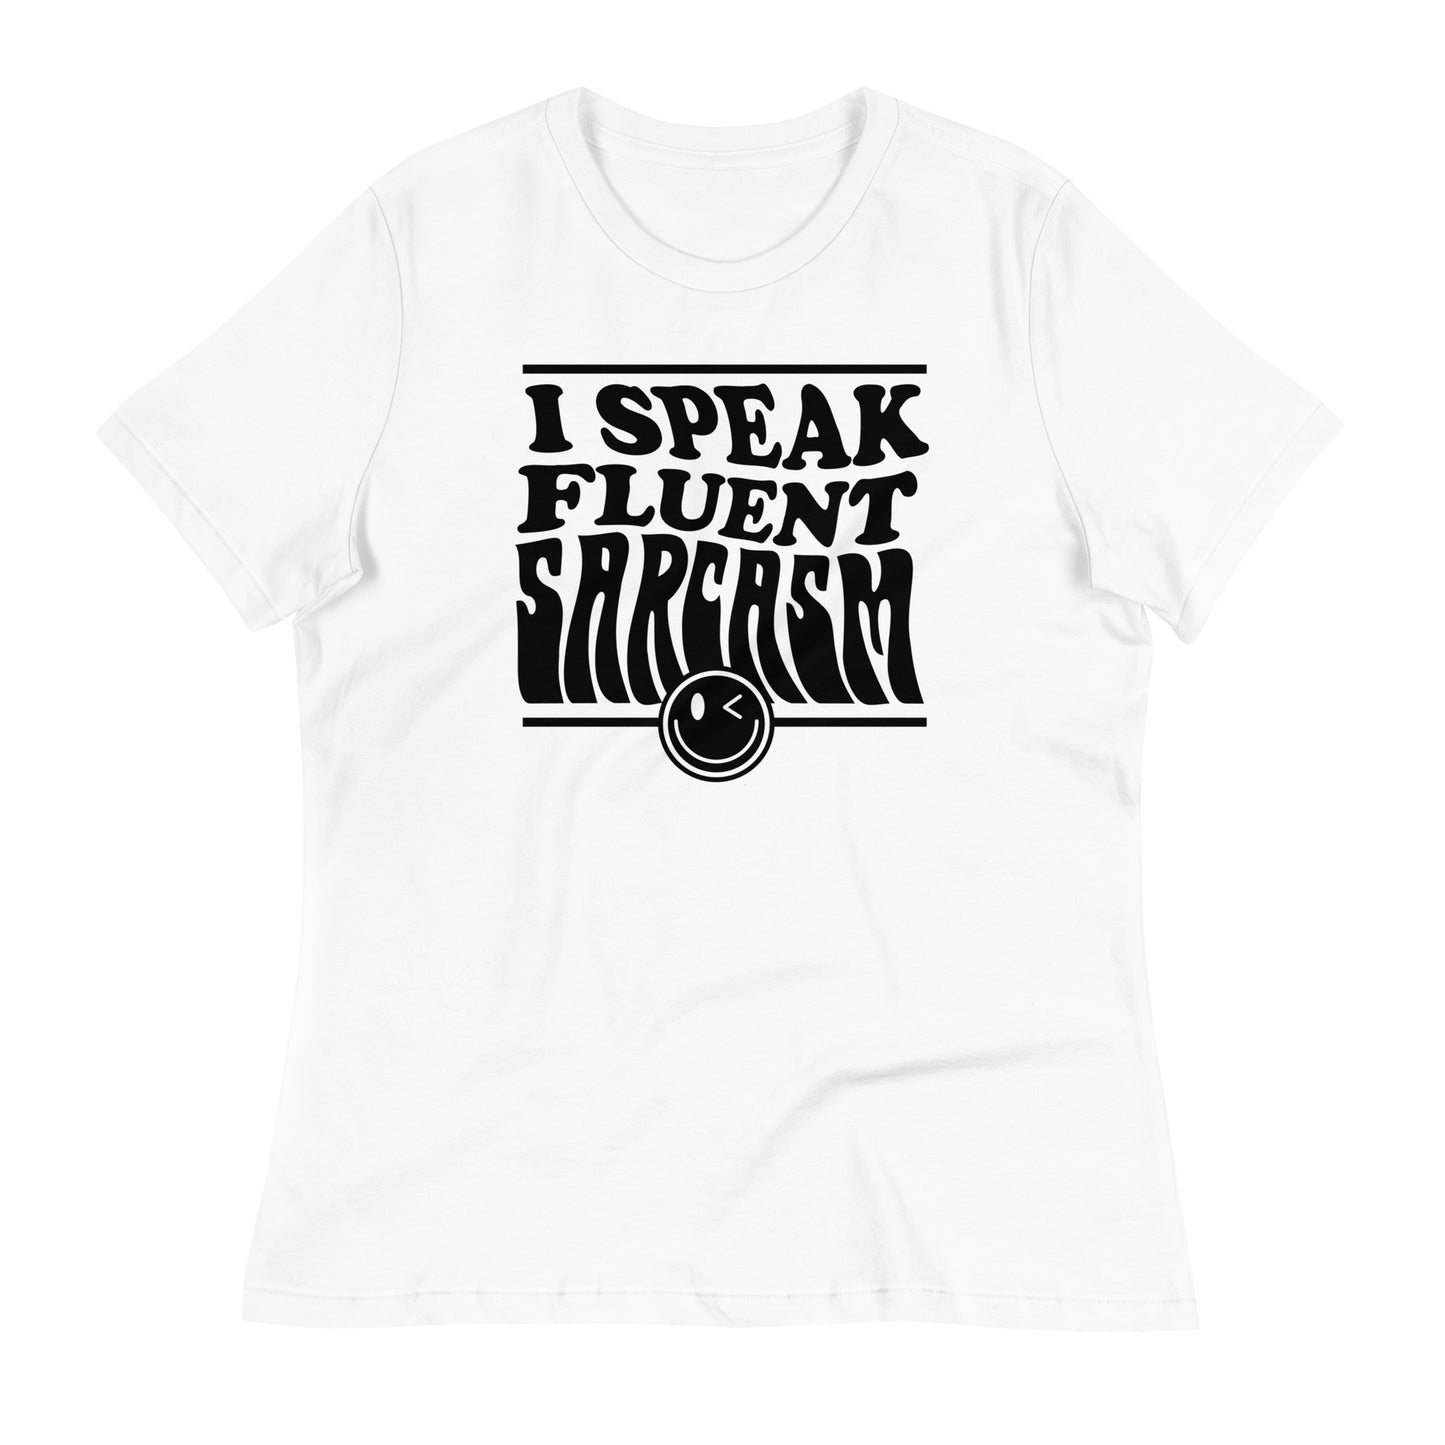 I Speak Fluent Sarcasm Bella Canvas Relaxed Women's T-Shirt